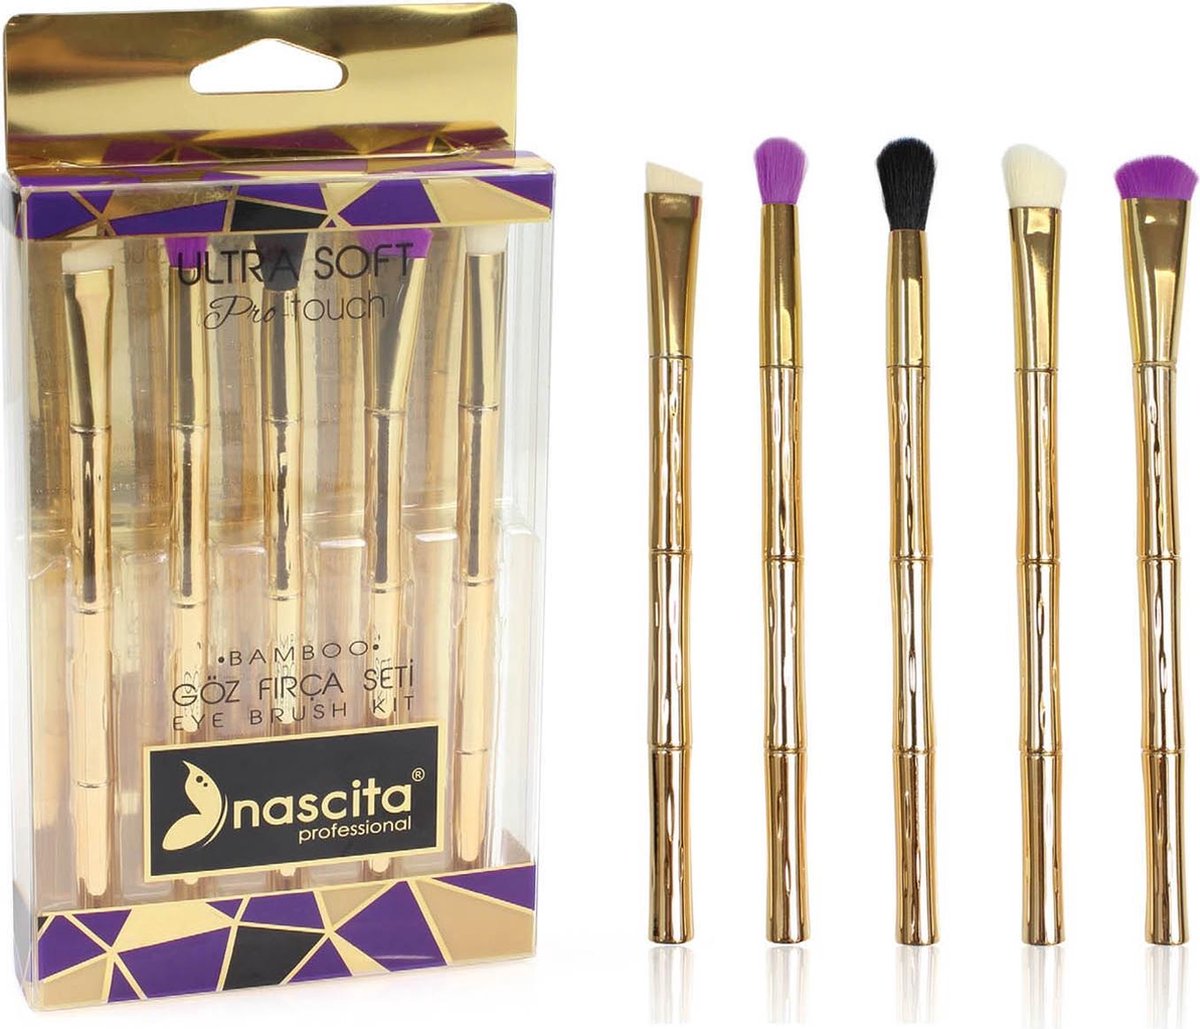 Nascita Gold Bamboo proffesional Eye brush kit 5pc